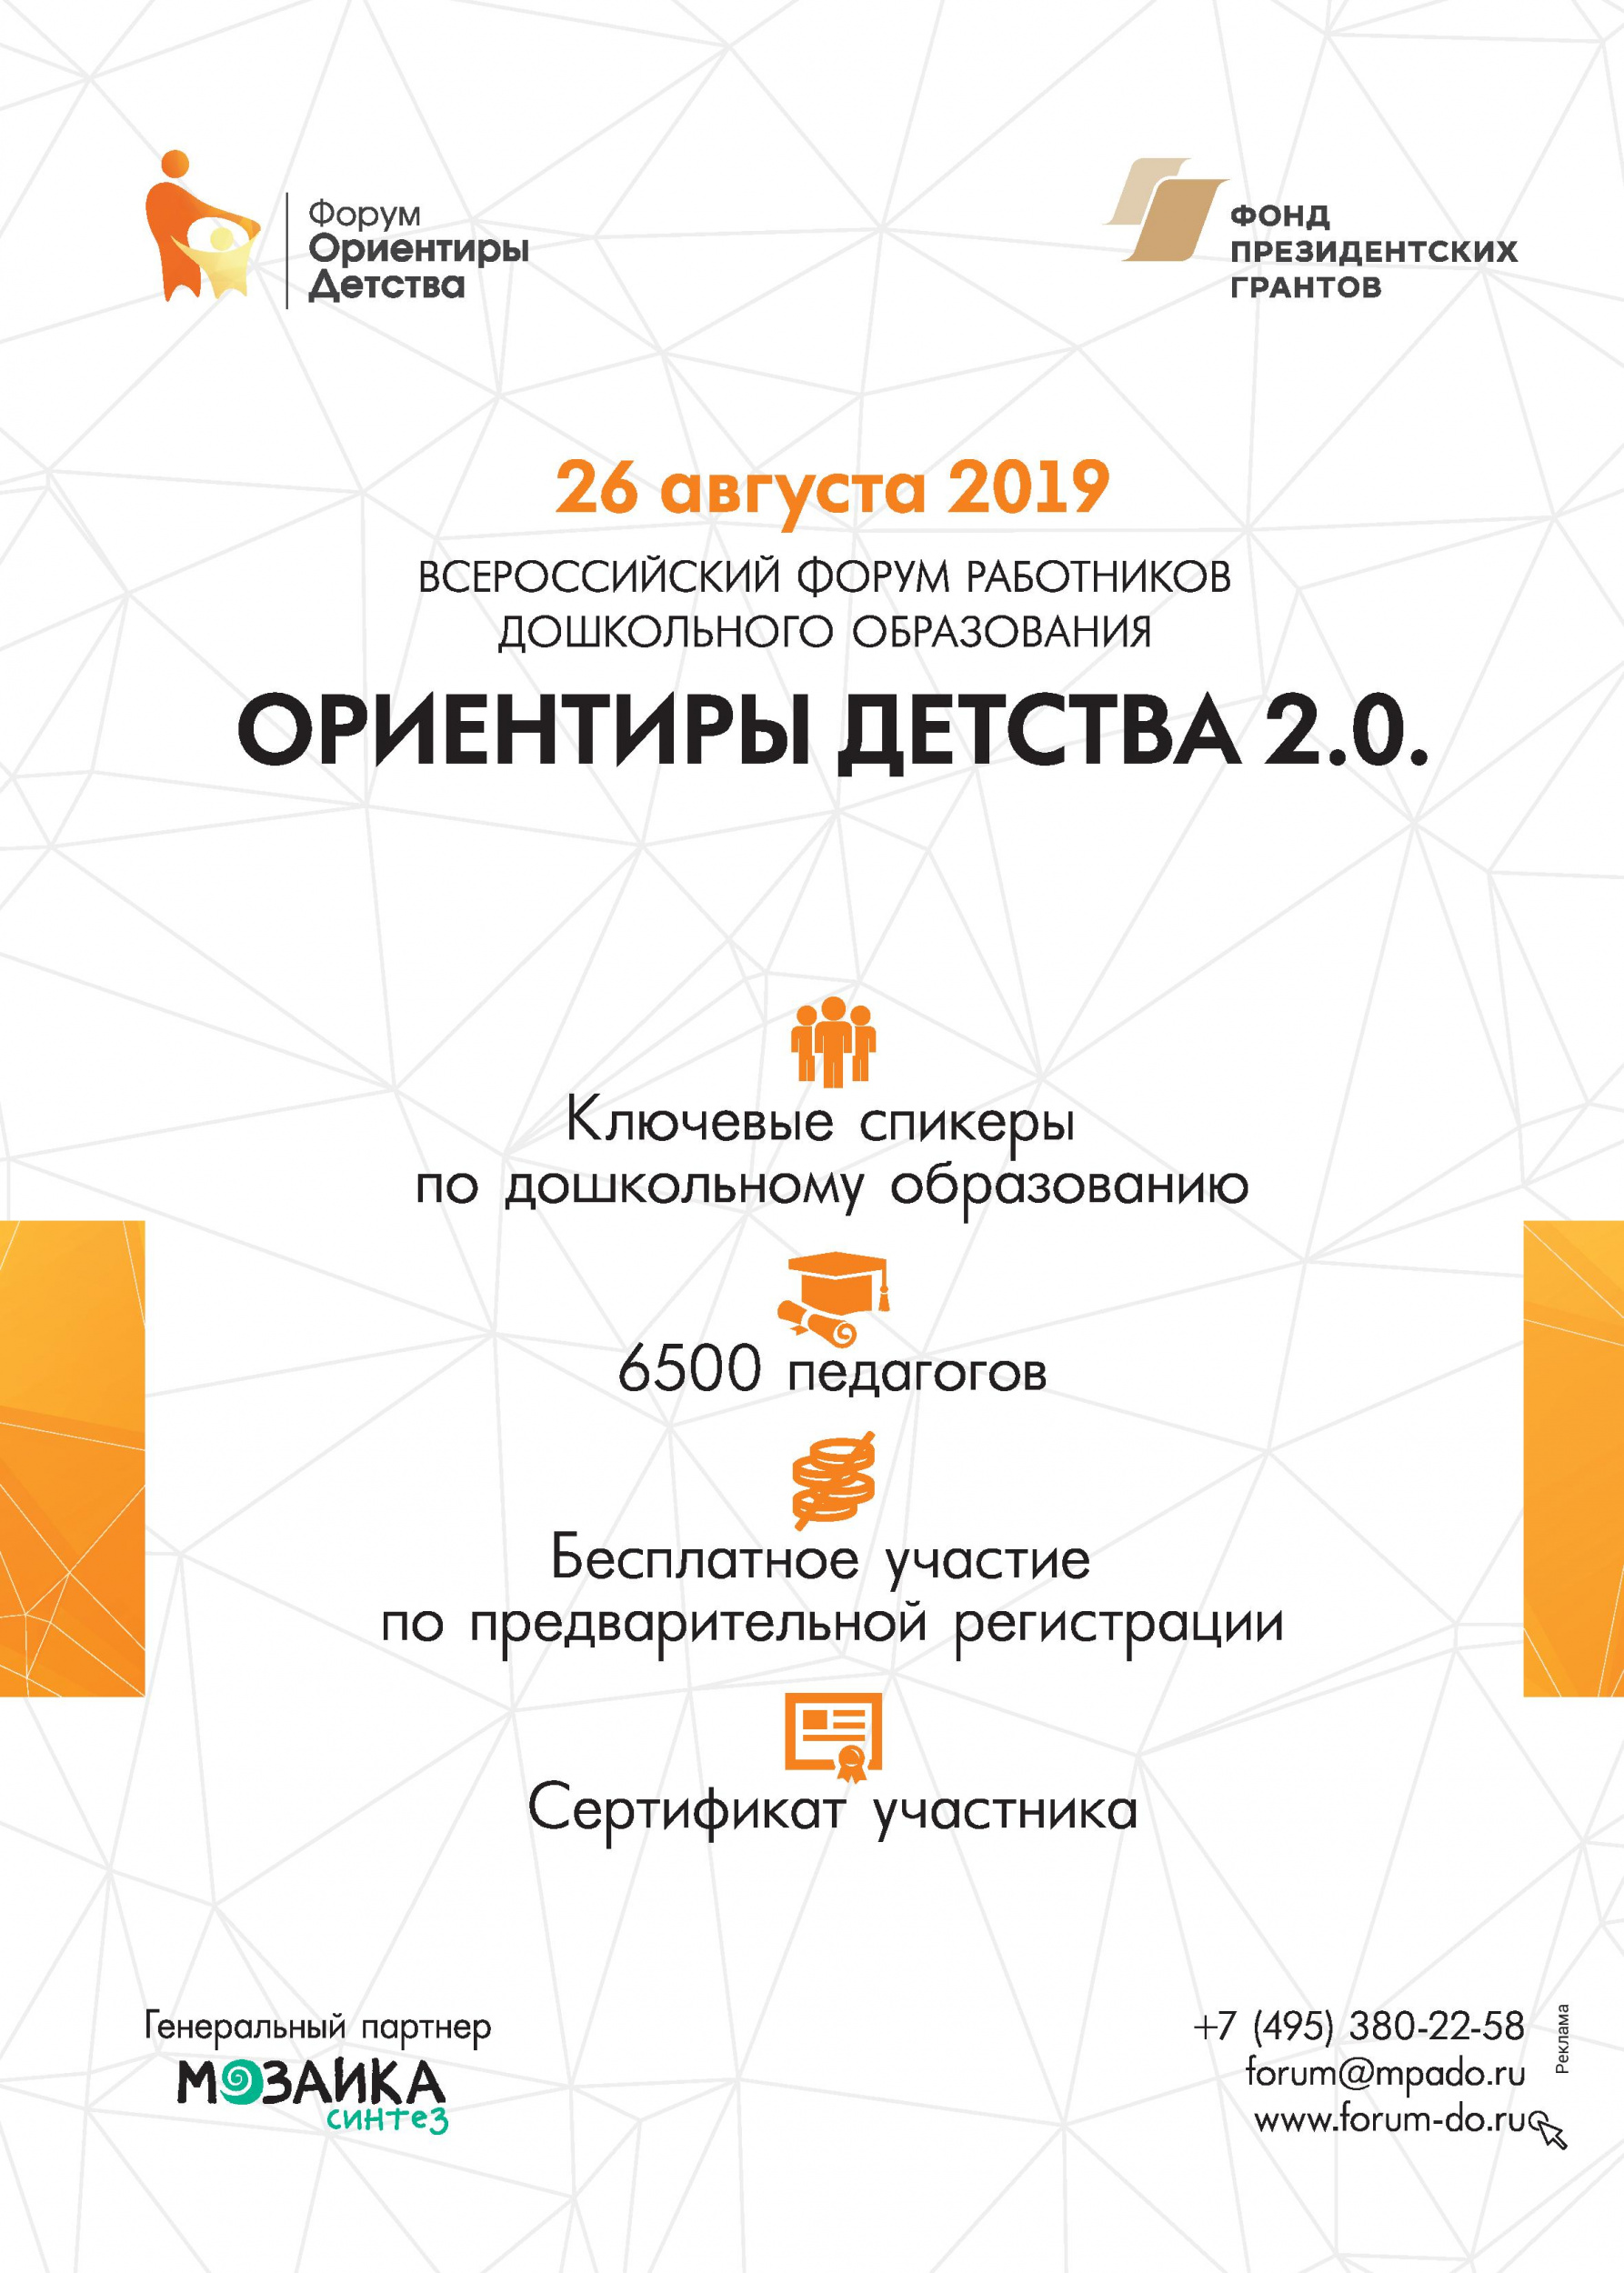 Всероссийский форум работников дошкольного образования